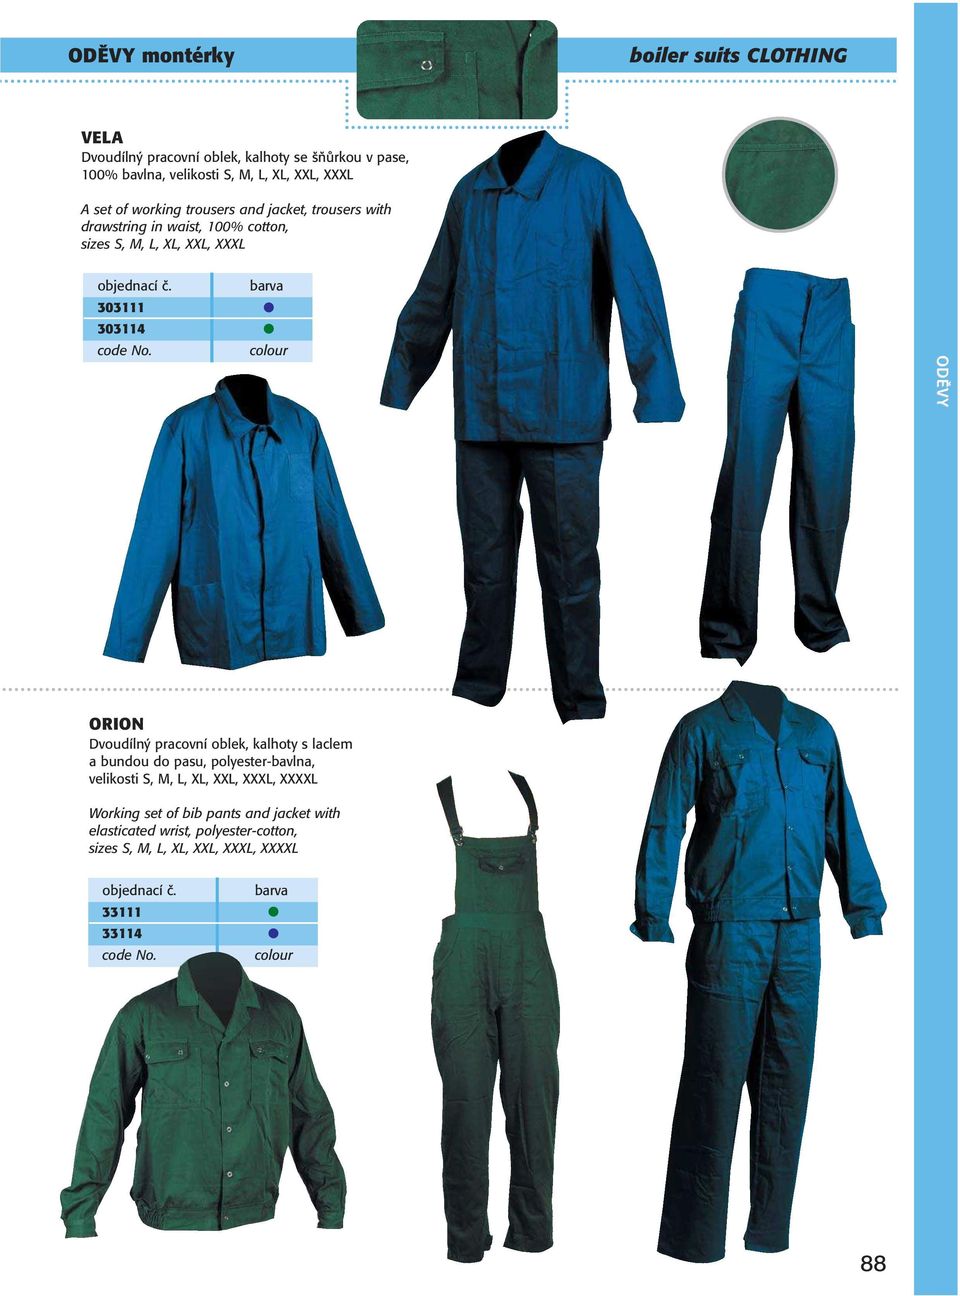 ORION Dvoudílný pracovní oblek, kalhoty s laclem a bundou do pasu, polyester-bavlna, velikosti S, M, L, XL, XXL, XXXL,